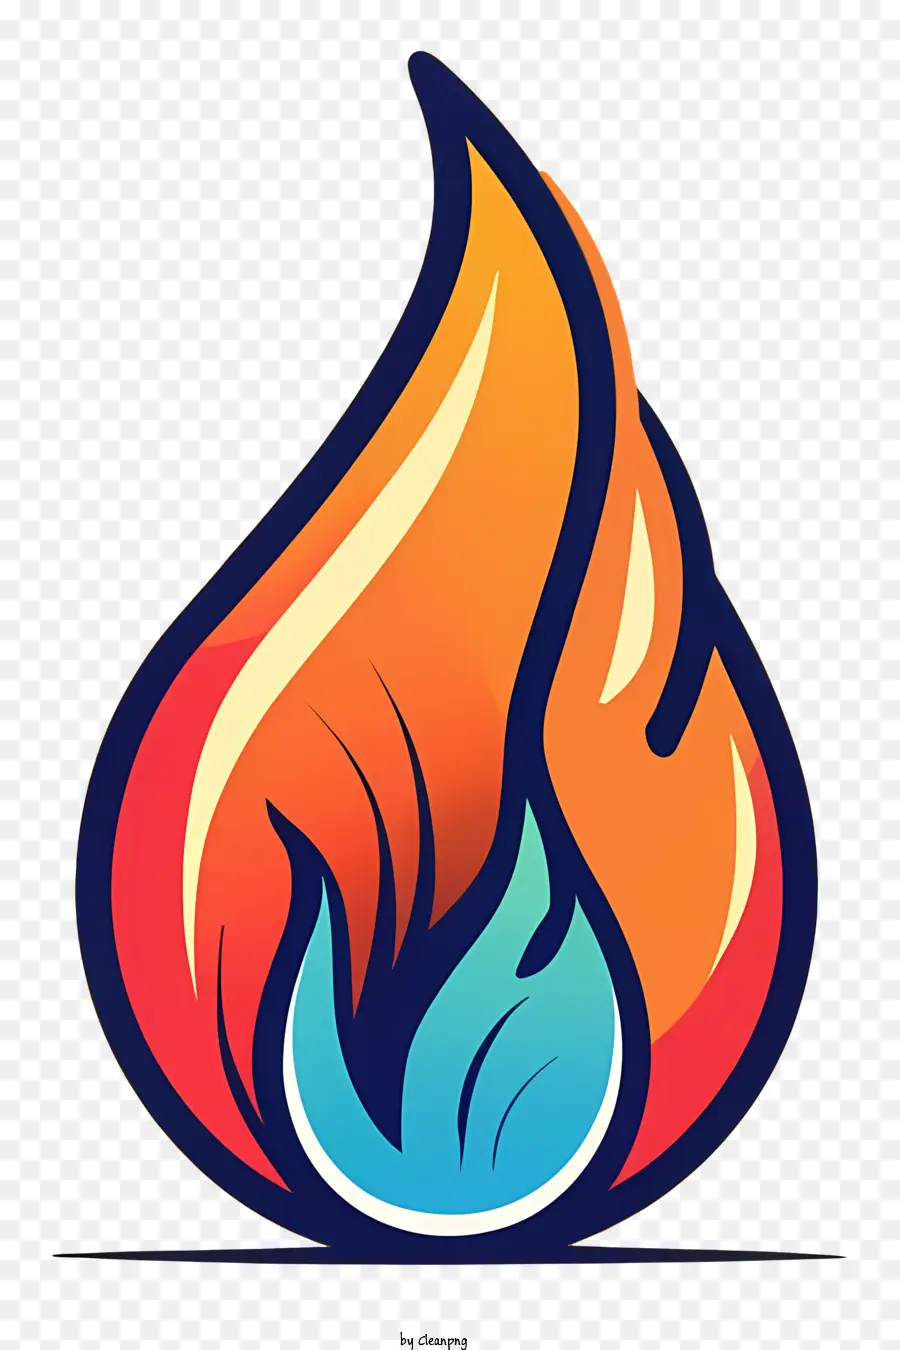 Cartoon fiammeggiante Fuoco nel cuore del cuore Posa caldo e rosso Schema di colori che brucia il cuore - Logo del cuore fiammeggiante con 